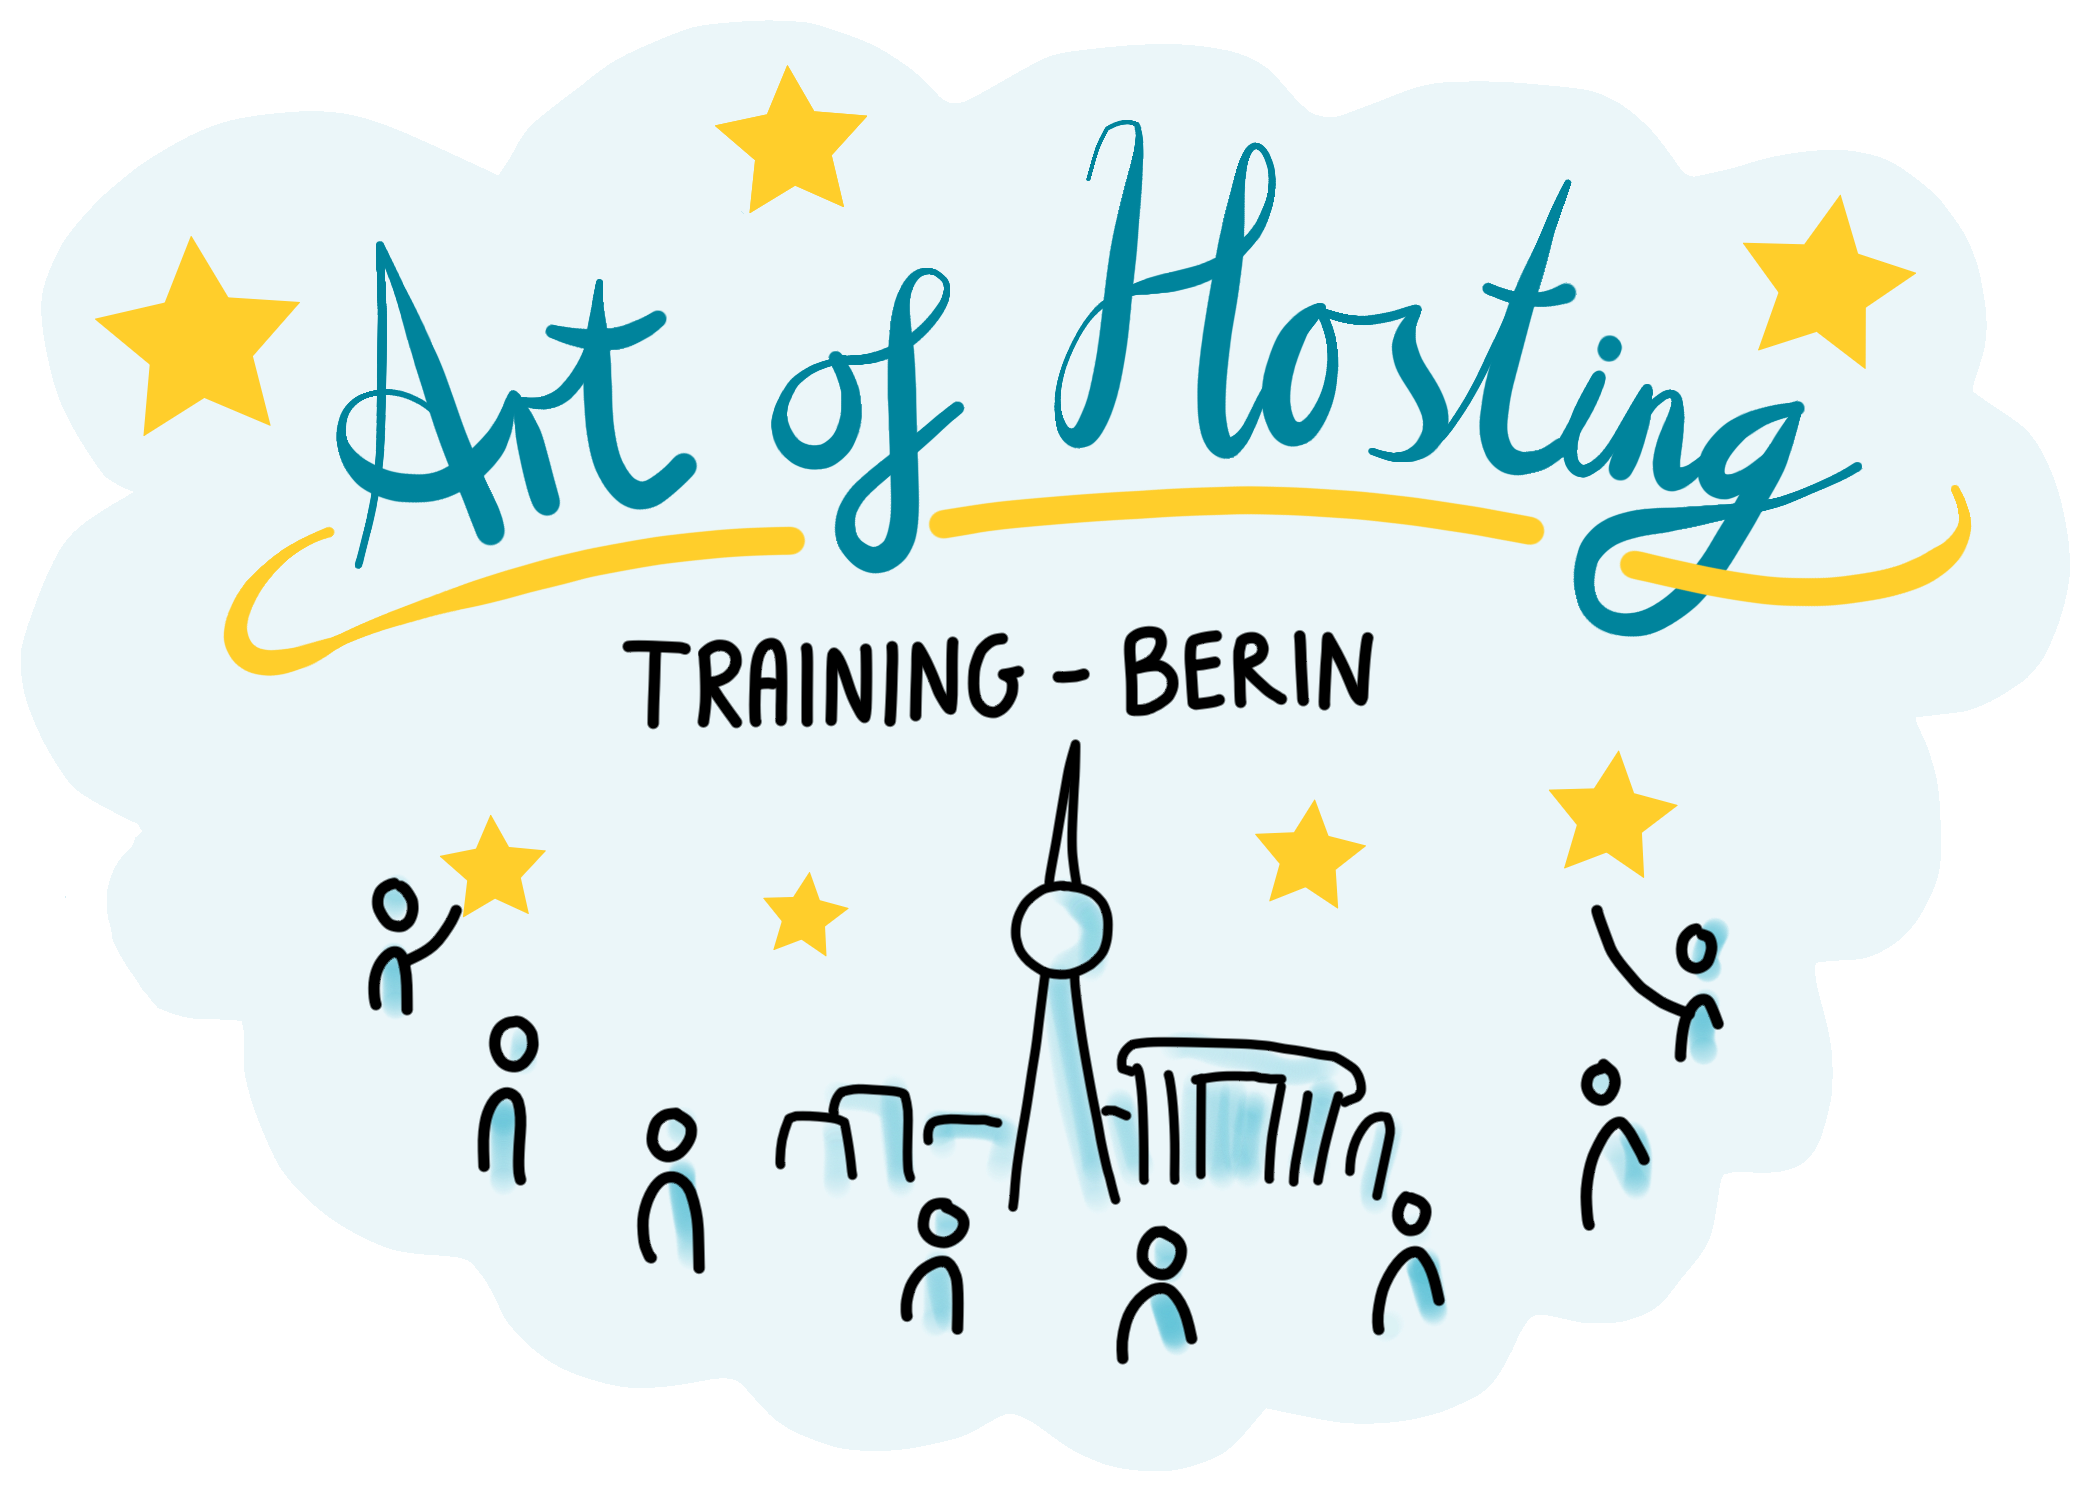 Art of Hosting Training Berlin